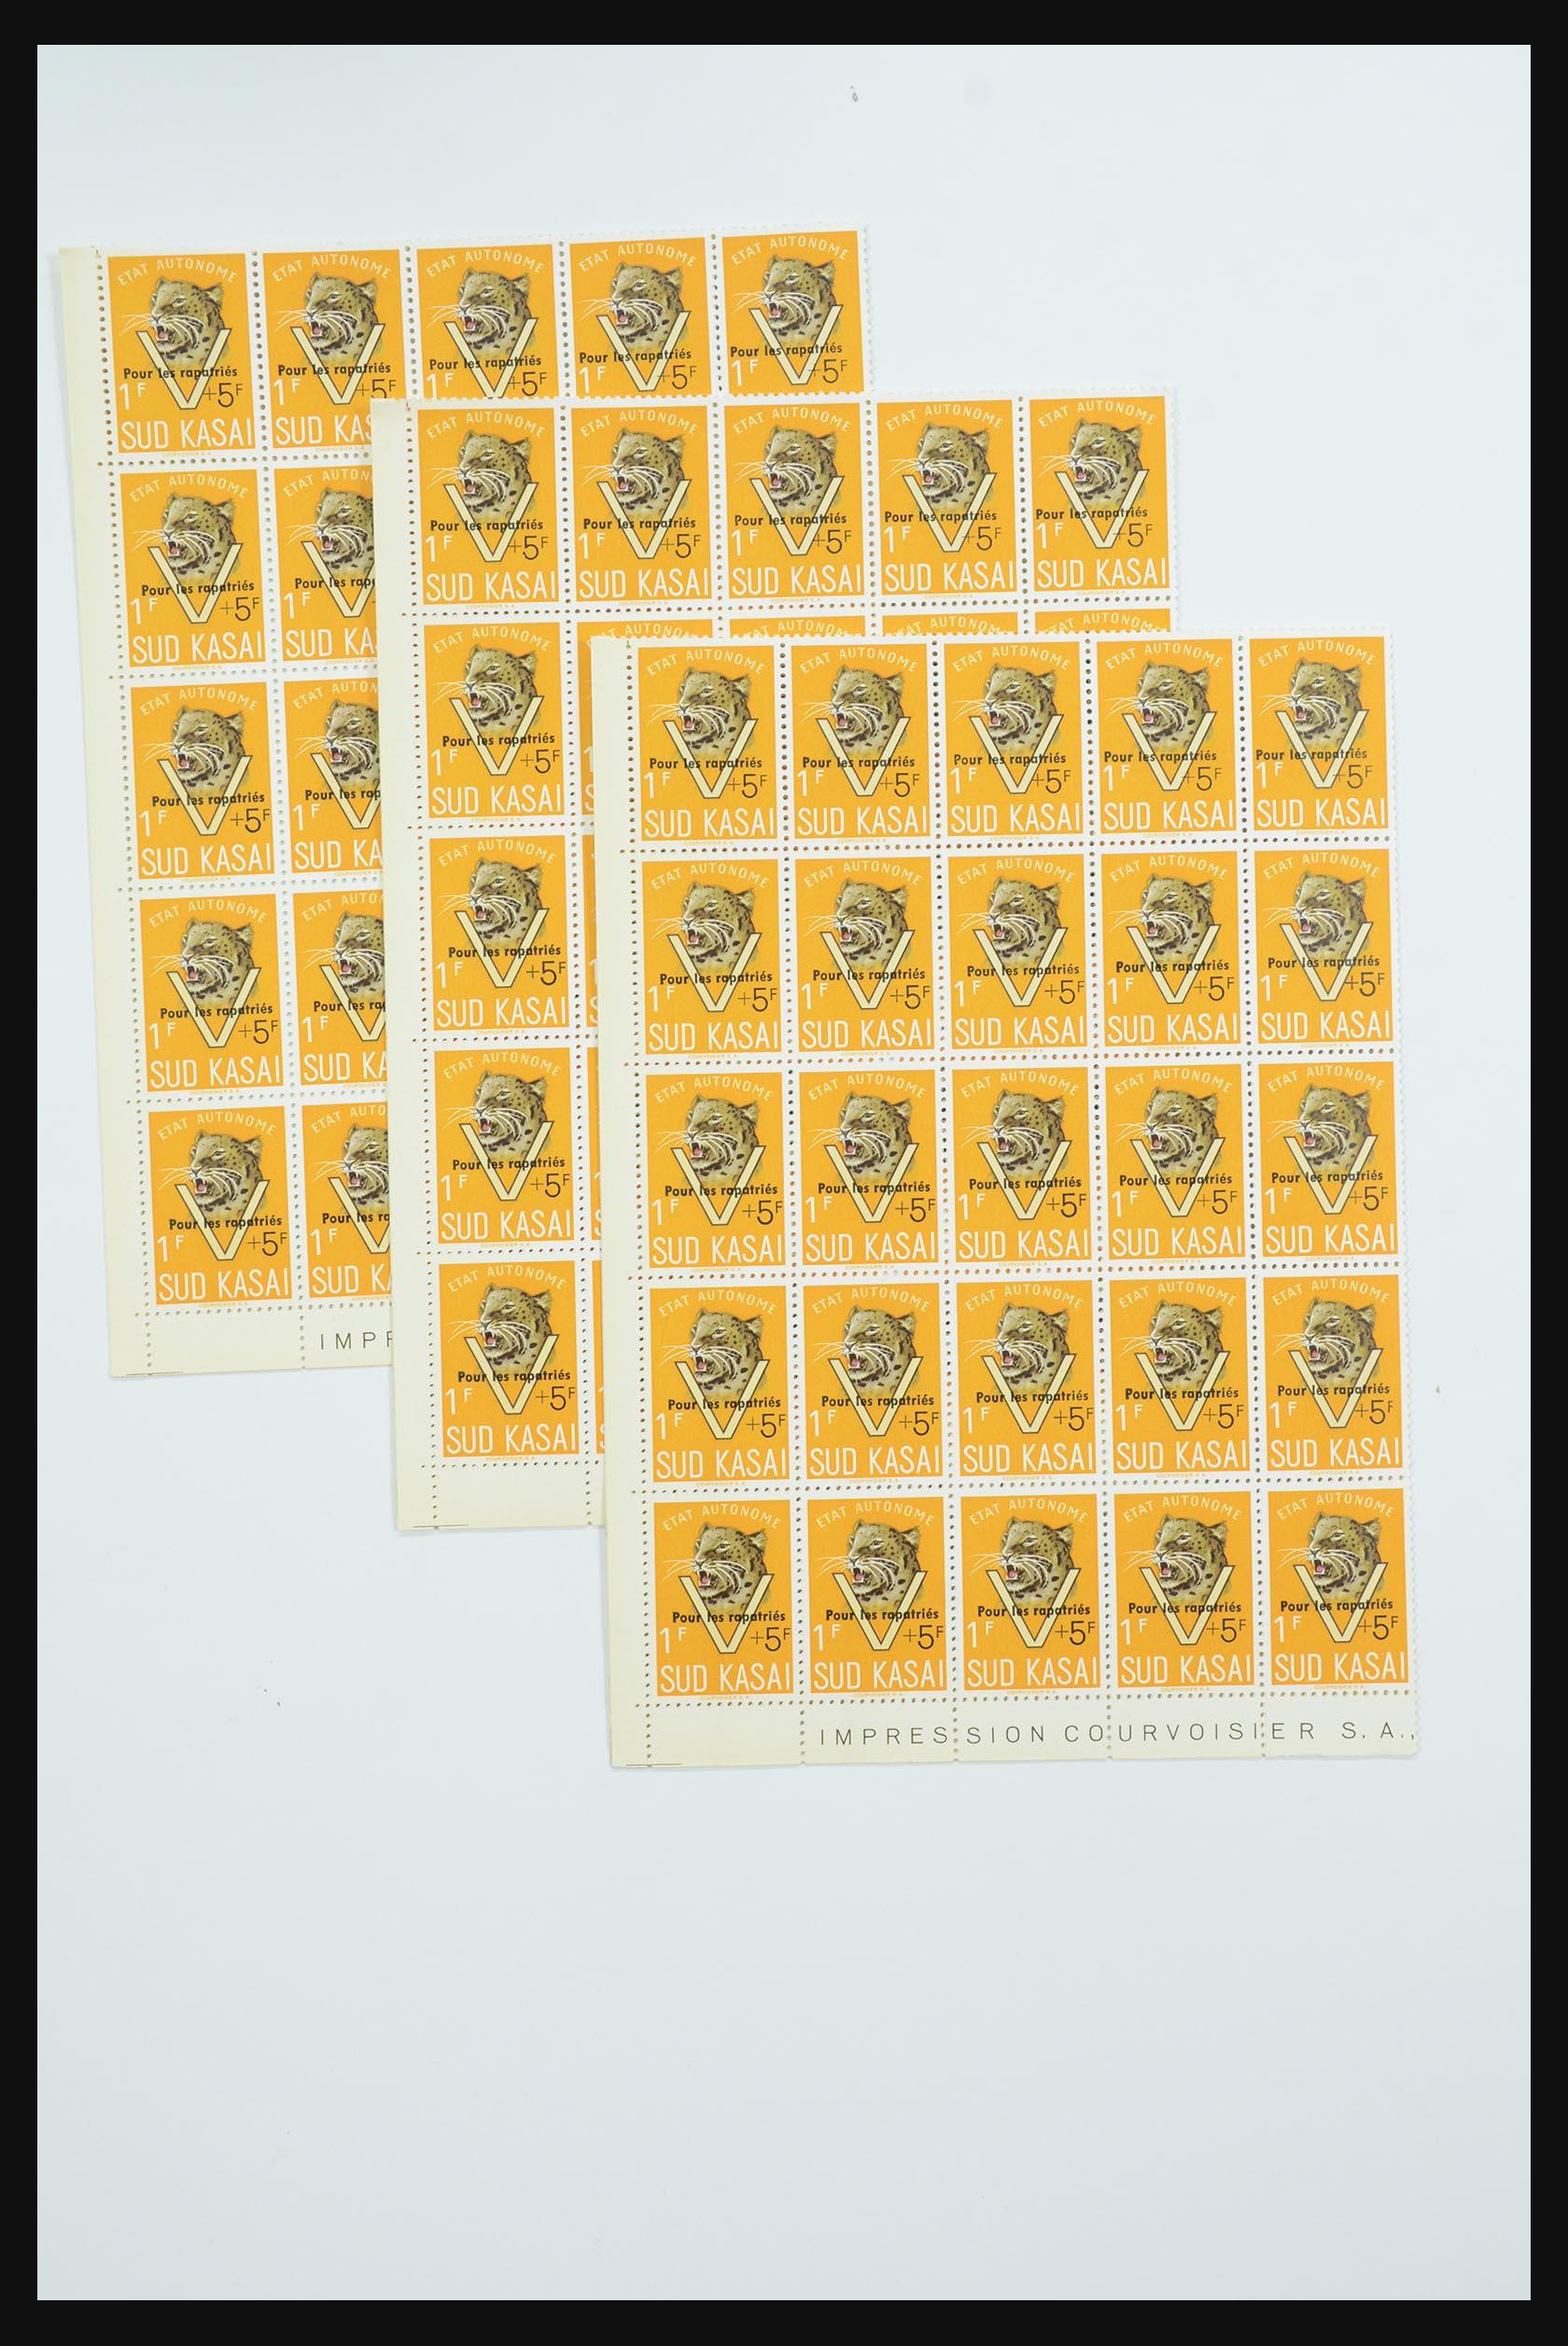 31962 036 - 31962 Belgian Congo-Sud-Kasai 1961.